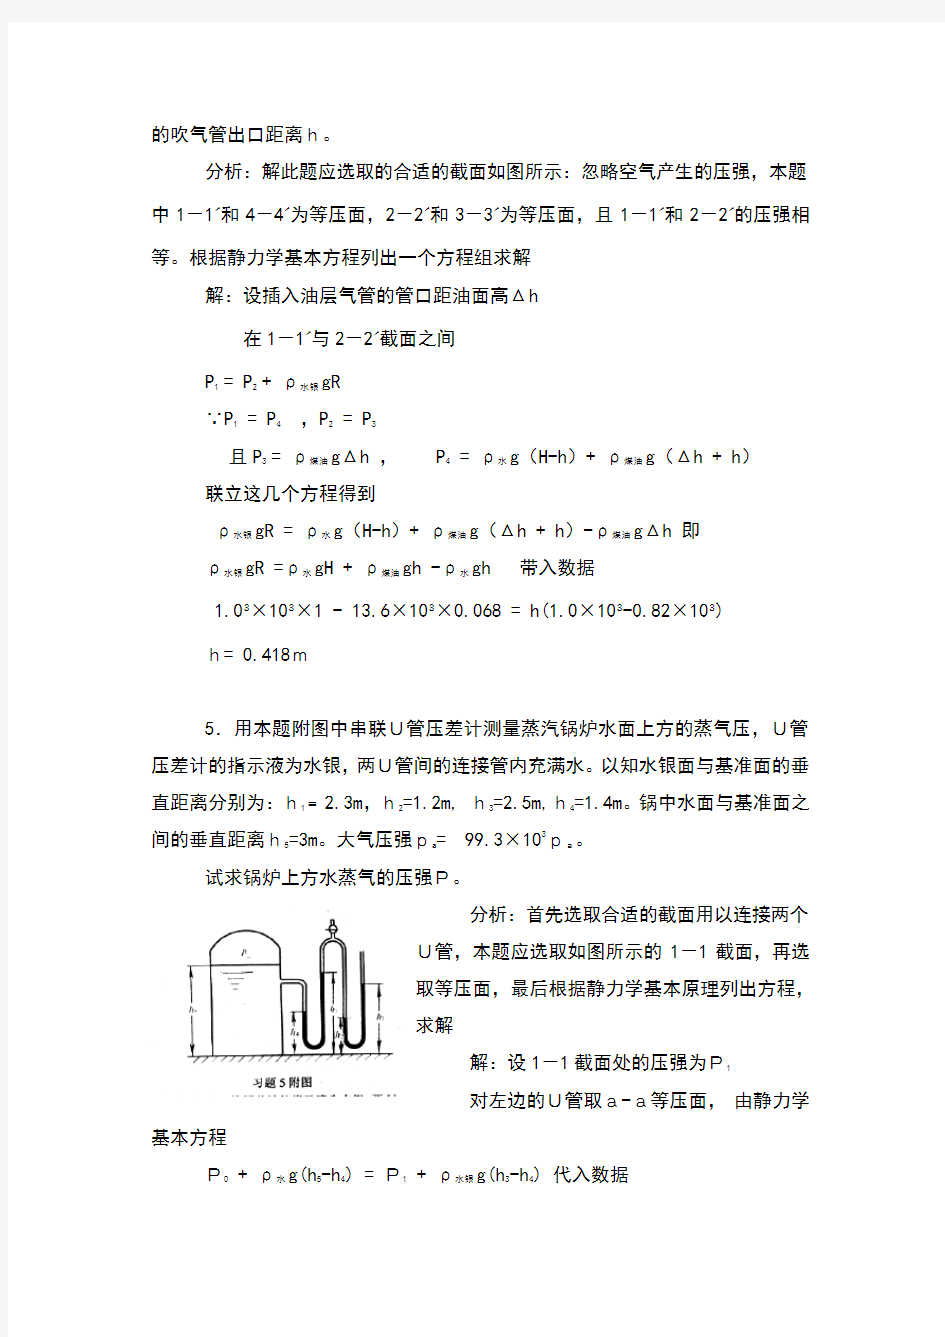 化工原理第二版夏清贾绍义版上册课后习题答案天津大学